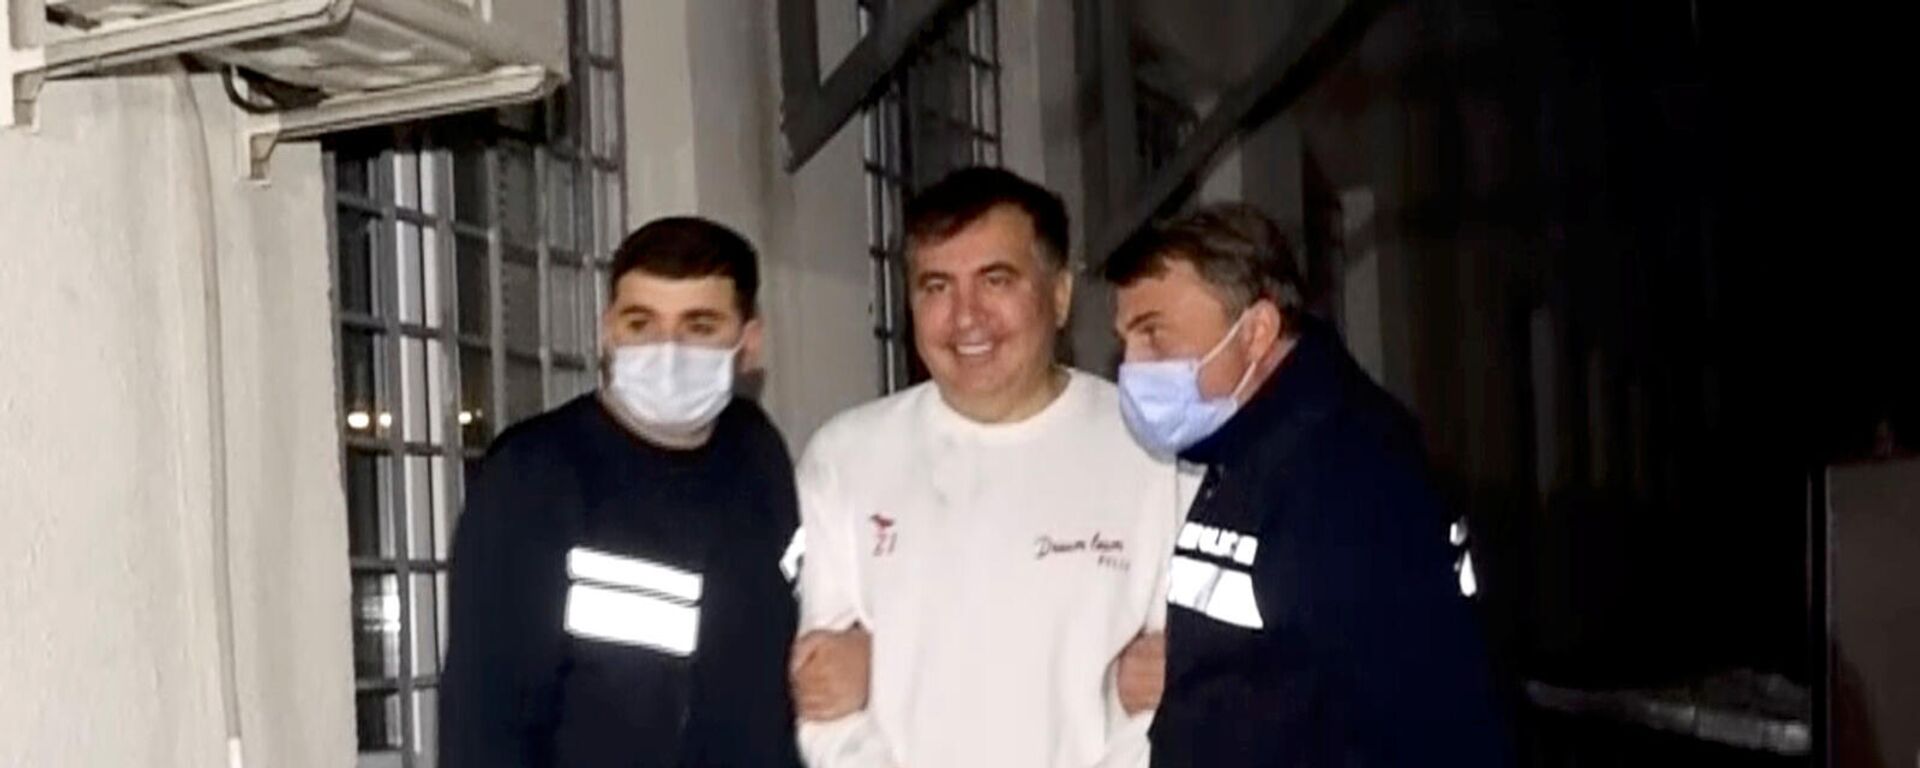 Сотрудники полиции сопровождают бывшего президента Грузии Михаила Саакашвили, который был задержан после возвращения в Грузию (1 октября 2021). Рустави - Sputnik Արմենիա, 1920, 06.10.2021